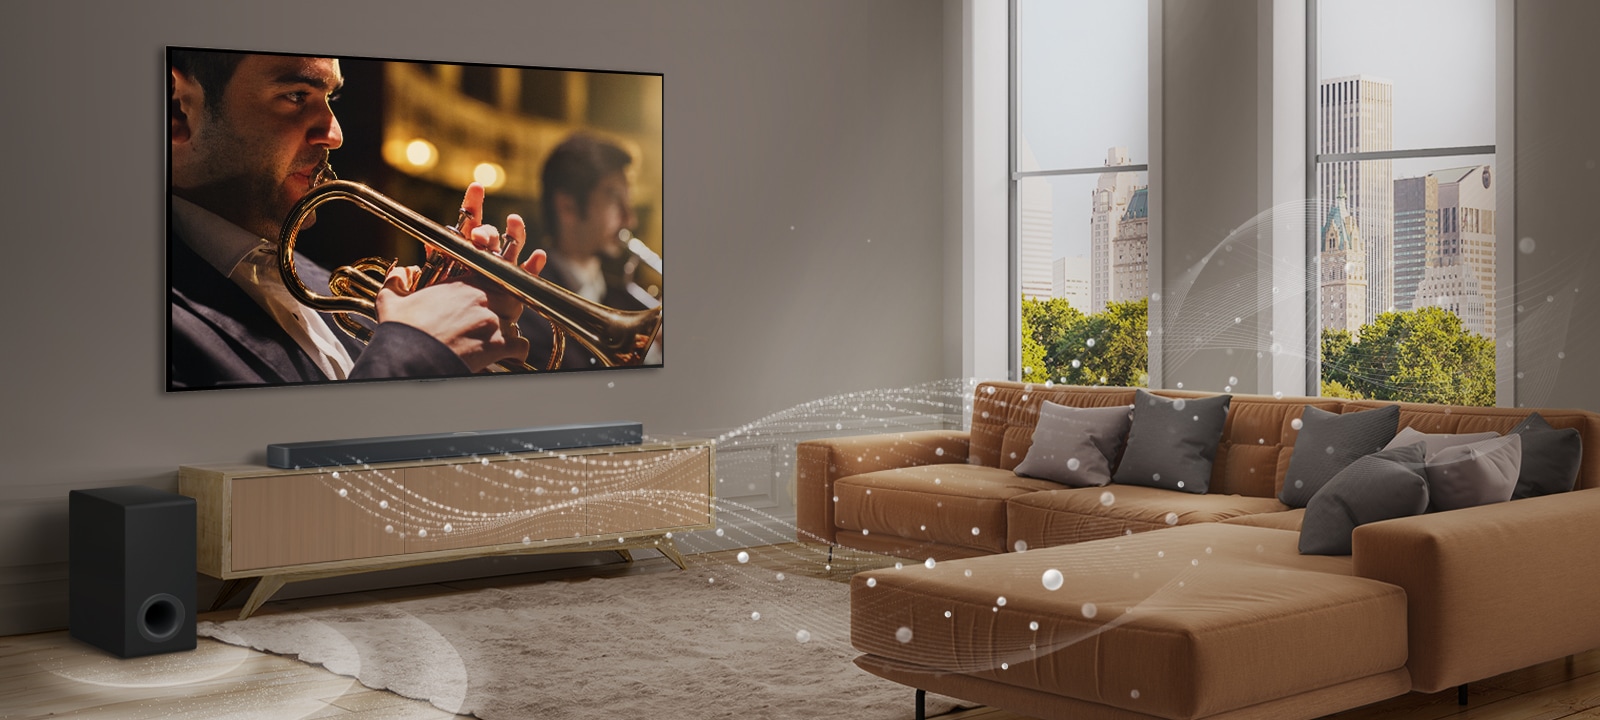 Una barra de sonido LG, un televisor LG y un subwoofer se encuentran en un moderno apartamento urbano. La LG Soundbar emite tres ramas de ondas sonoras, formadas por gotas blancas que flotan por el fondo del piso. Junto a la Soundbar hay un subwoofer, que crea un efecto de sonido desde el fondo.